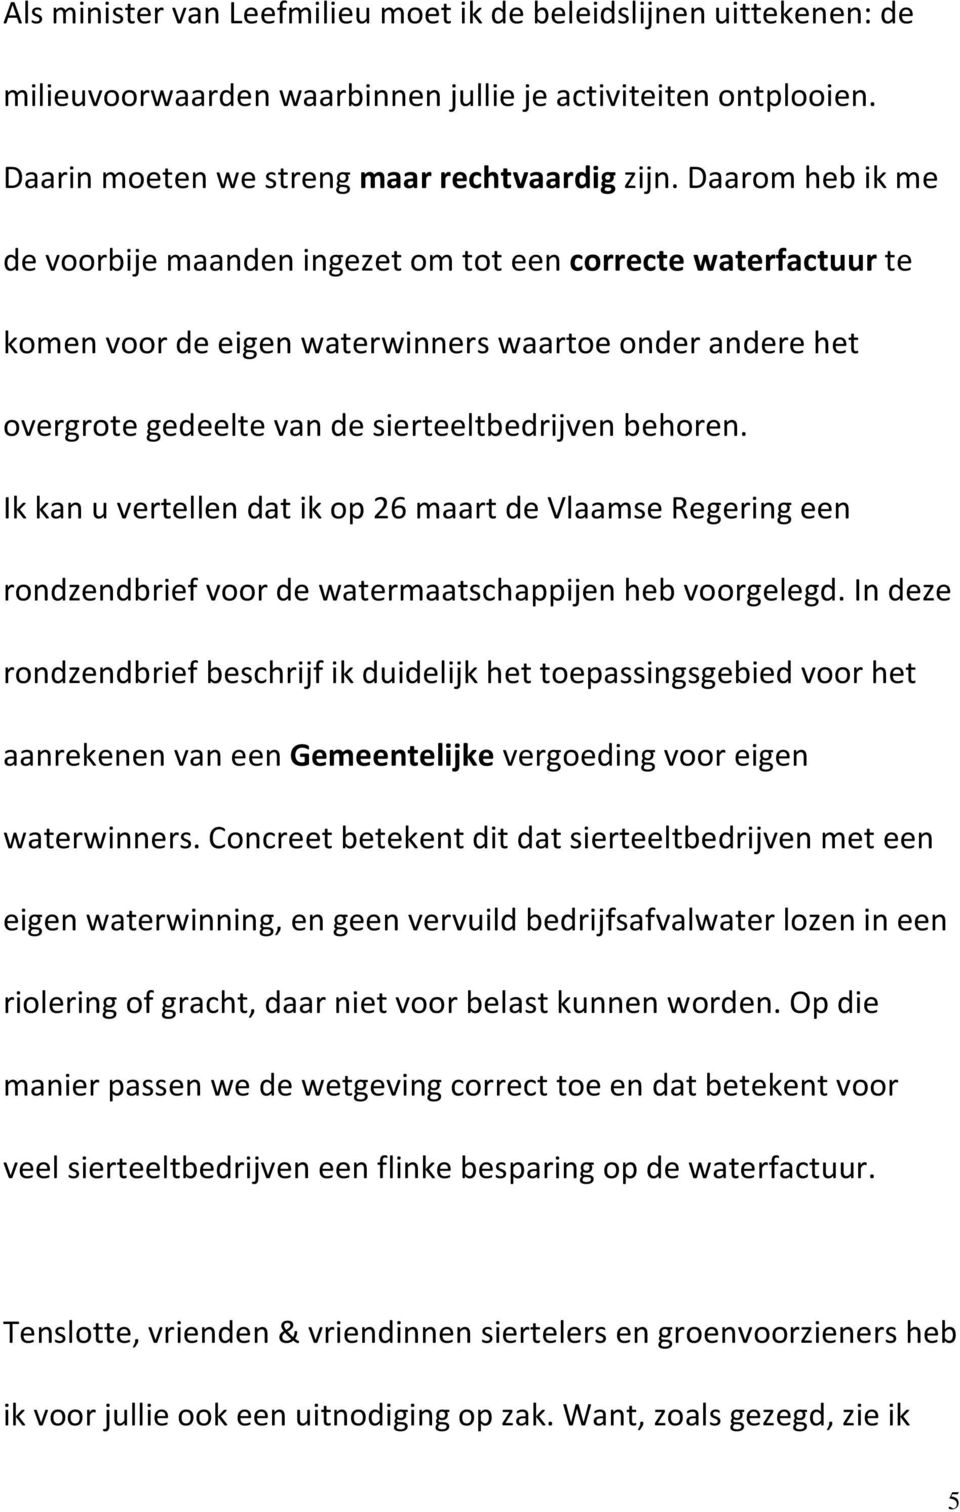 Ik kan u vertellen dat ik op 26 maart de Vlaamse Regering een rondzendbrief voor de watermaatschappijen heb voorgelegd.